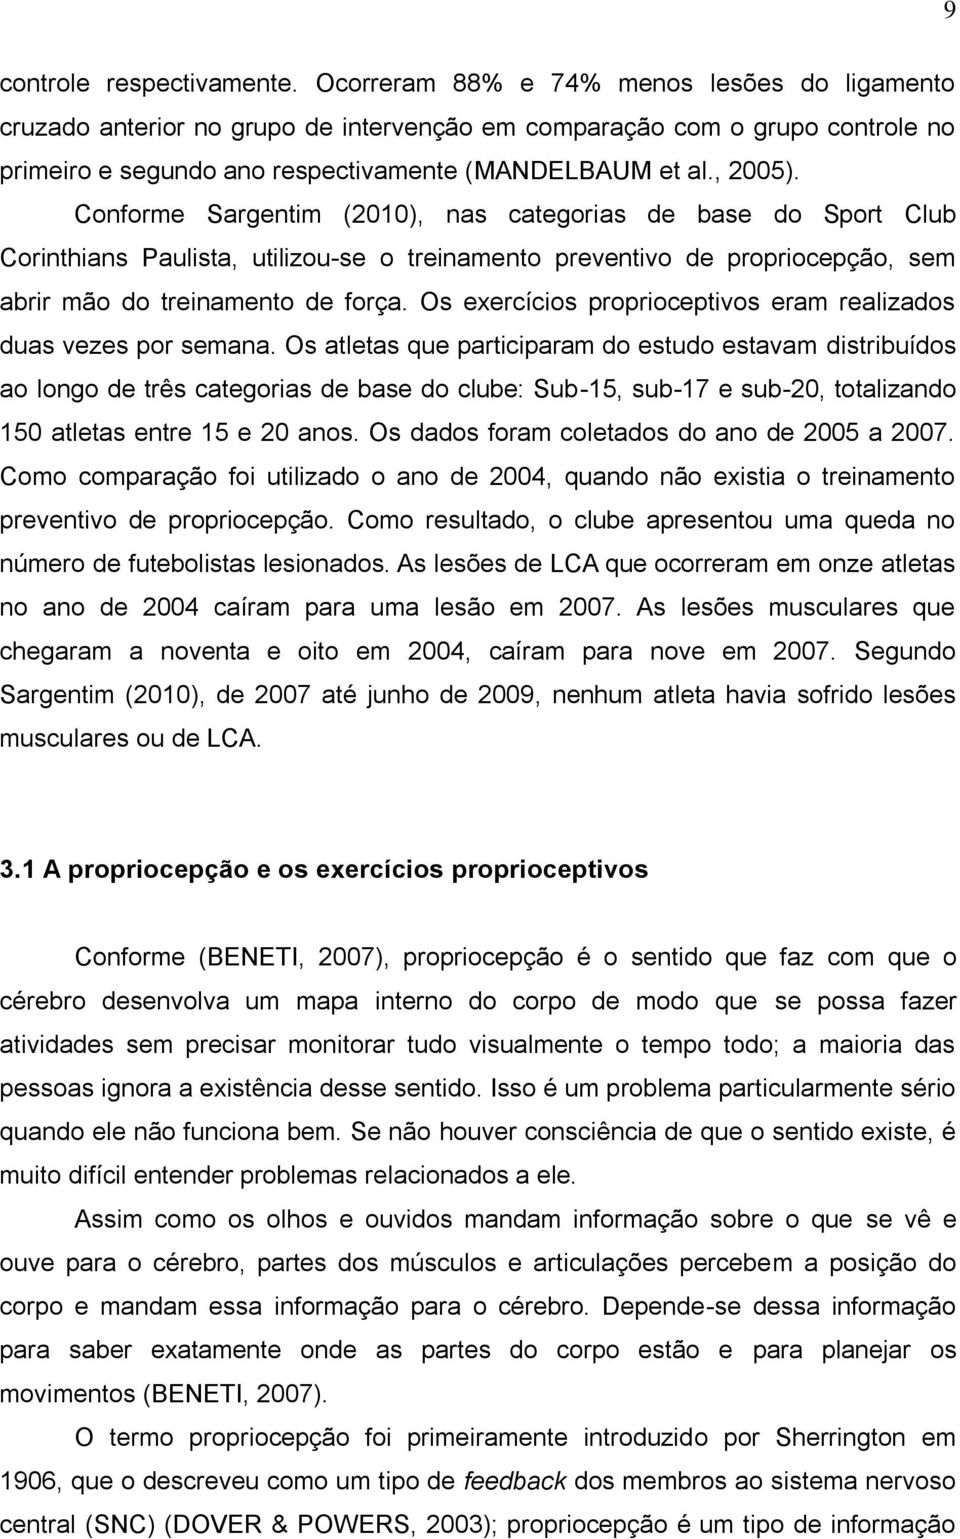 Conforme Sargentim (2010), nas categorias de base do Sport Club Corinthians Paulista, utilizou-se o treinamento preventivo de propriocepção, sem abrir mão do treinamento de força.